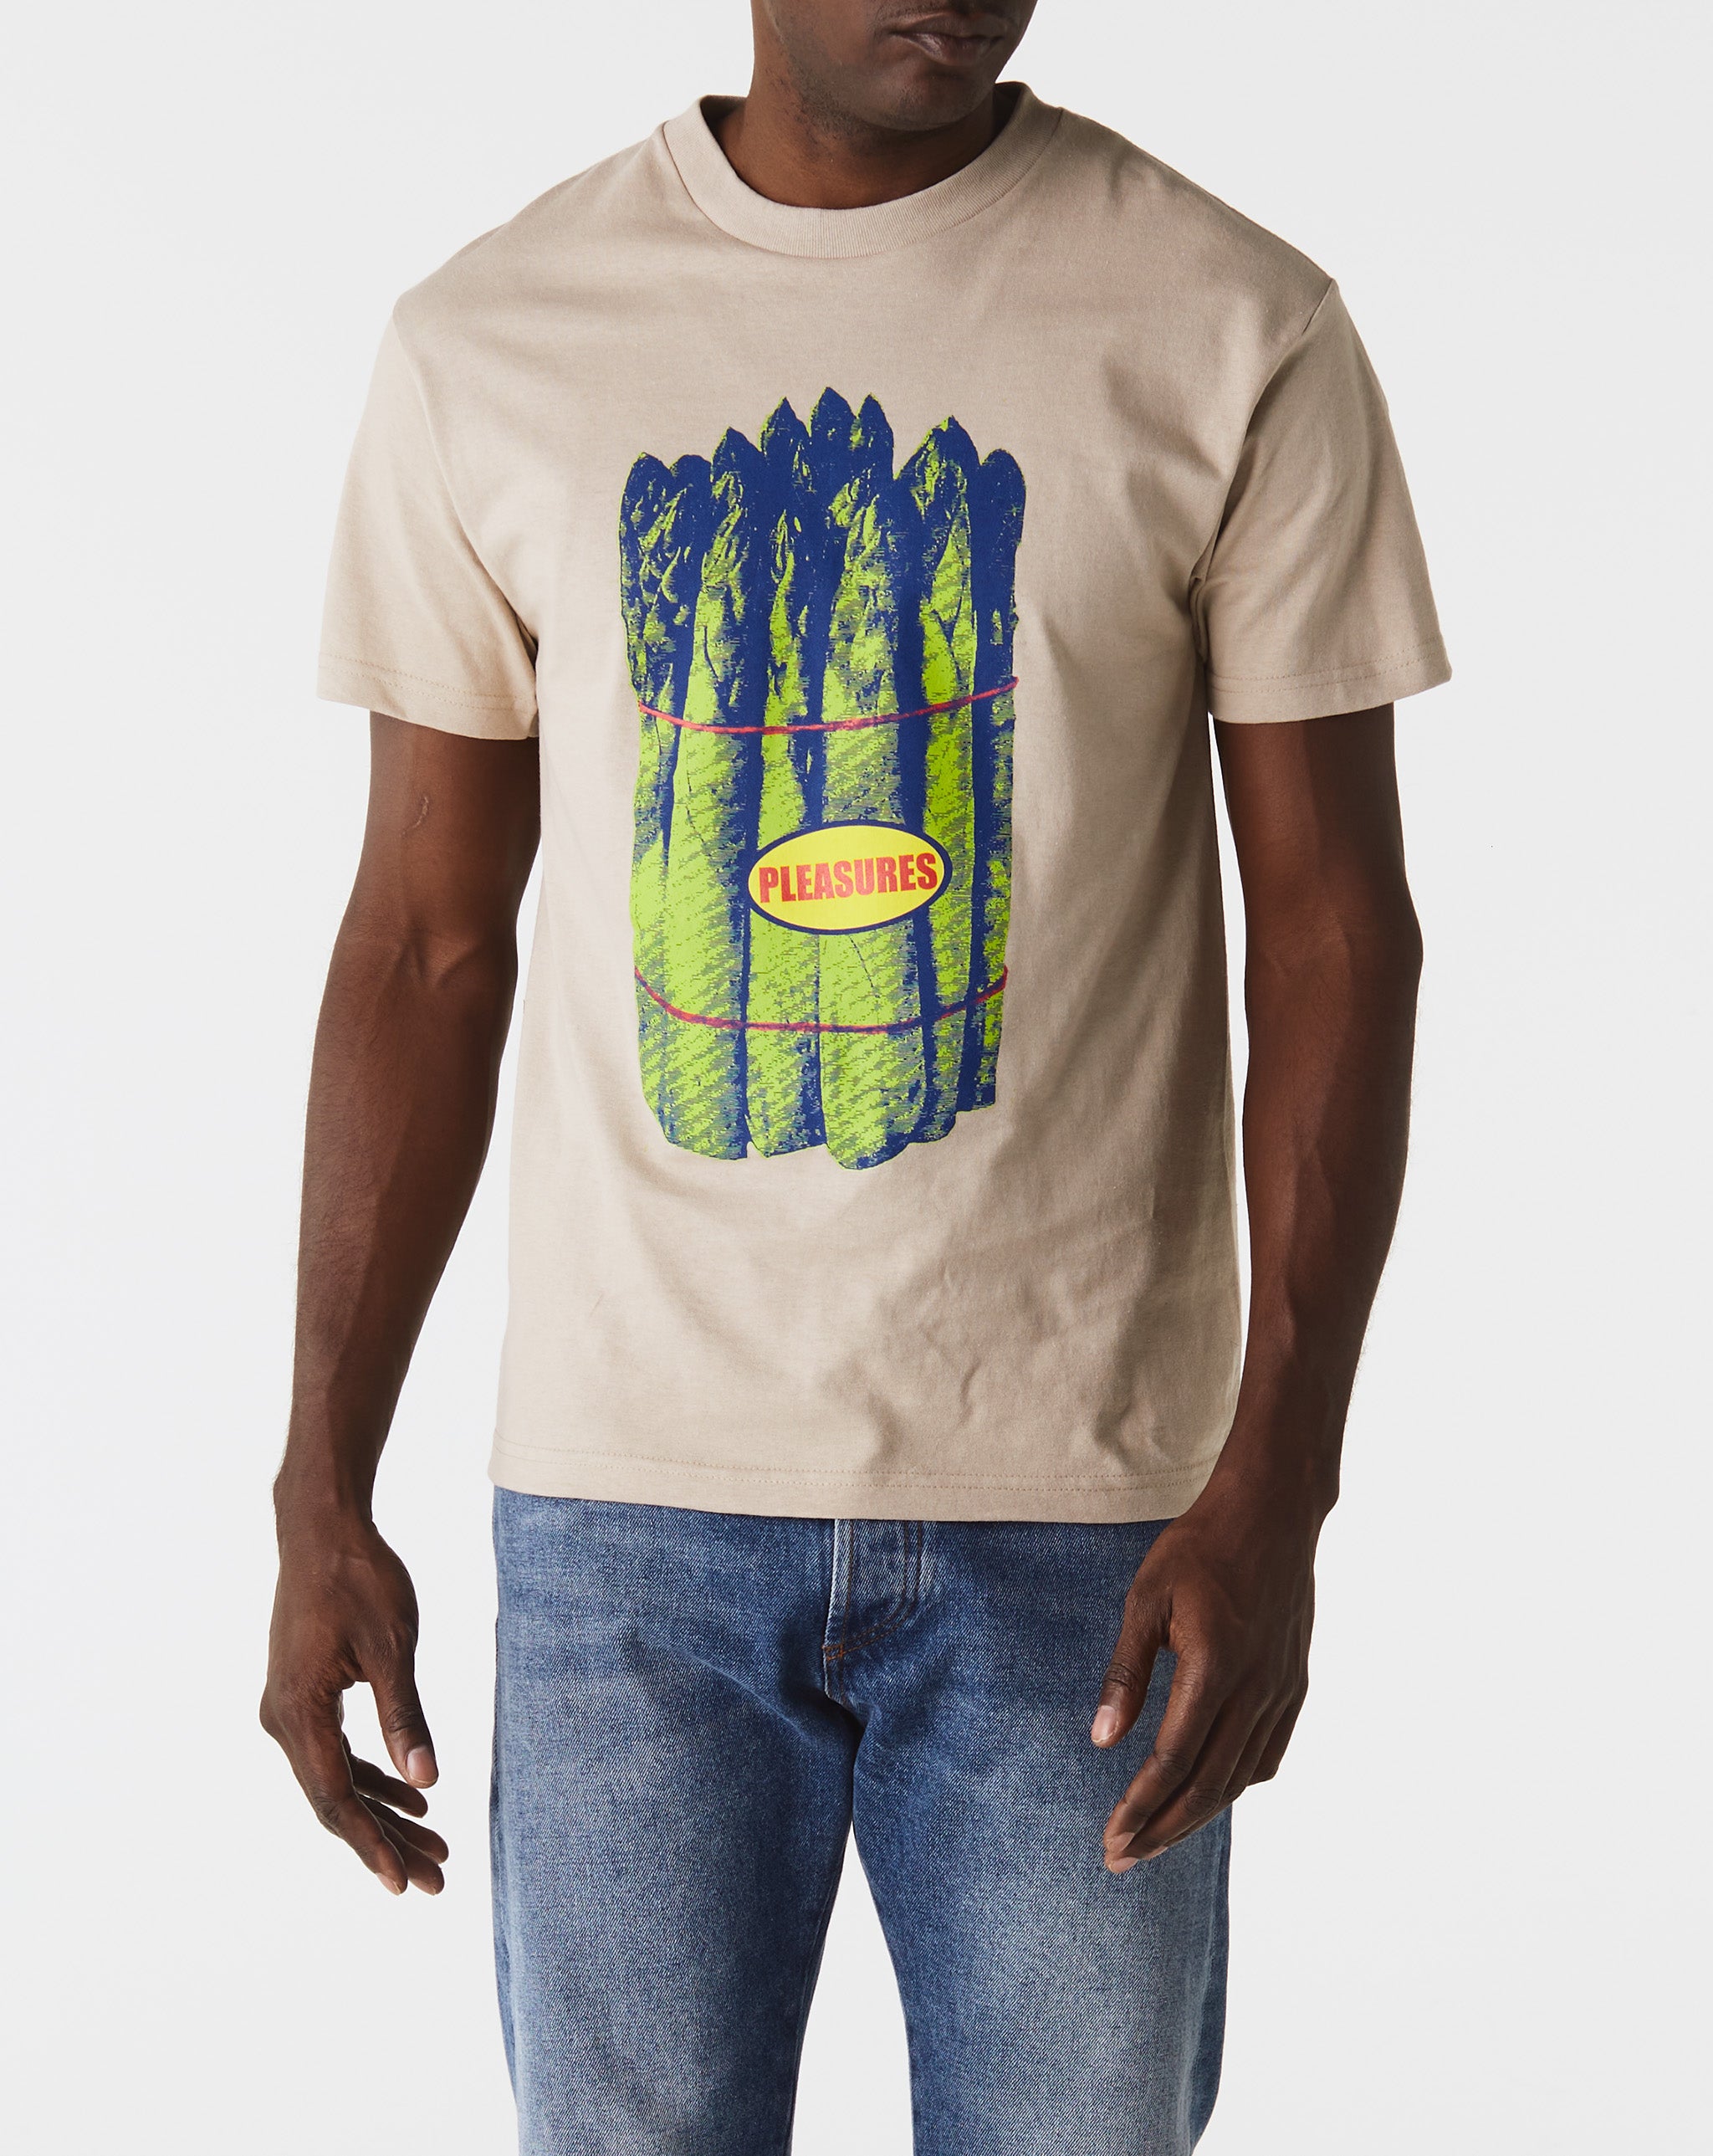 Pleasures Veggie T-Shirt  - Cheap Cerbe Jordan outlet